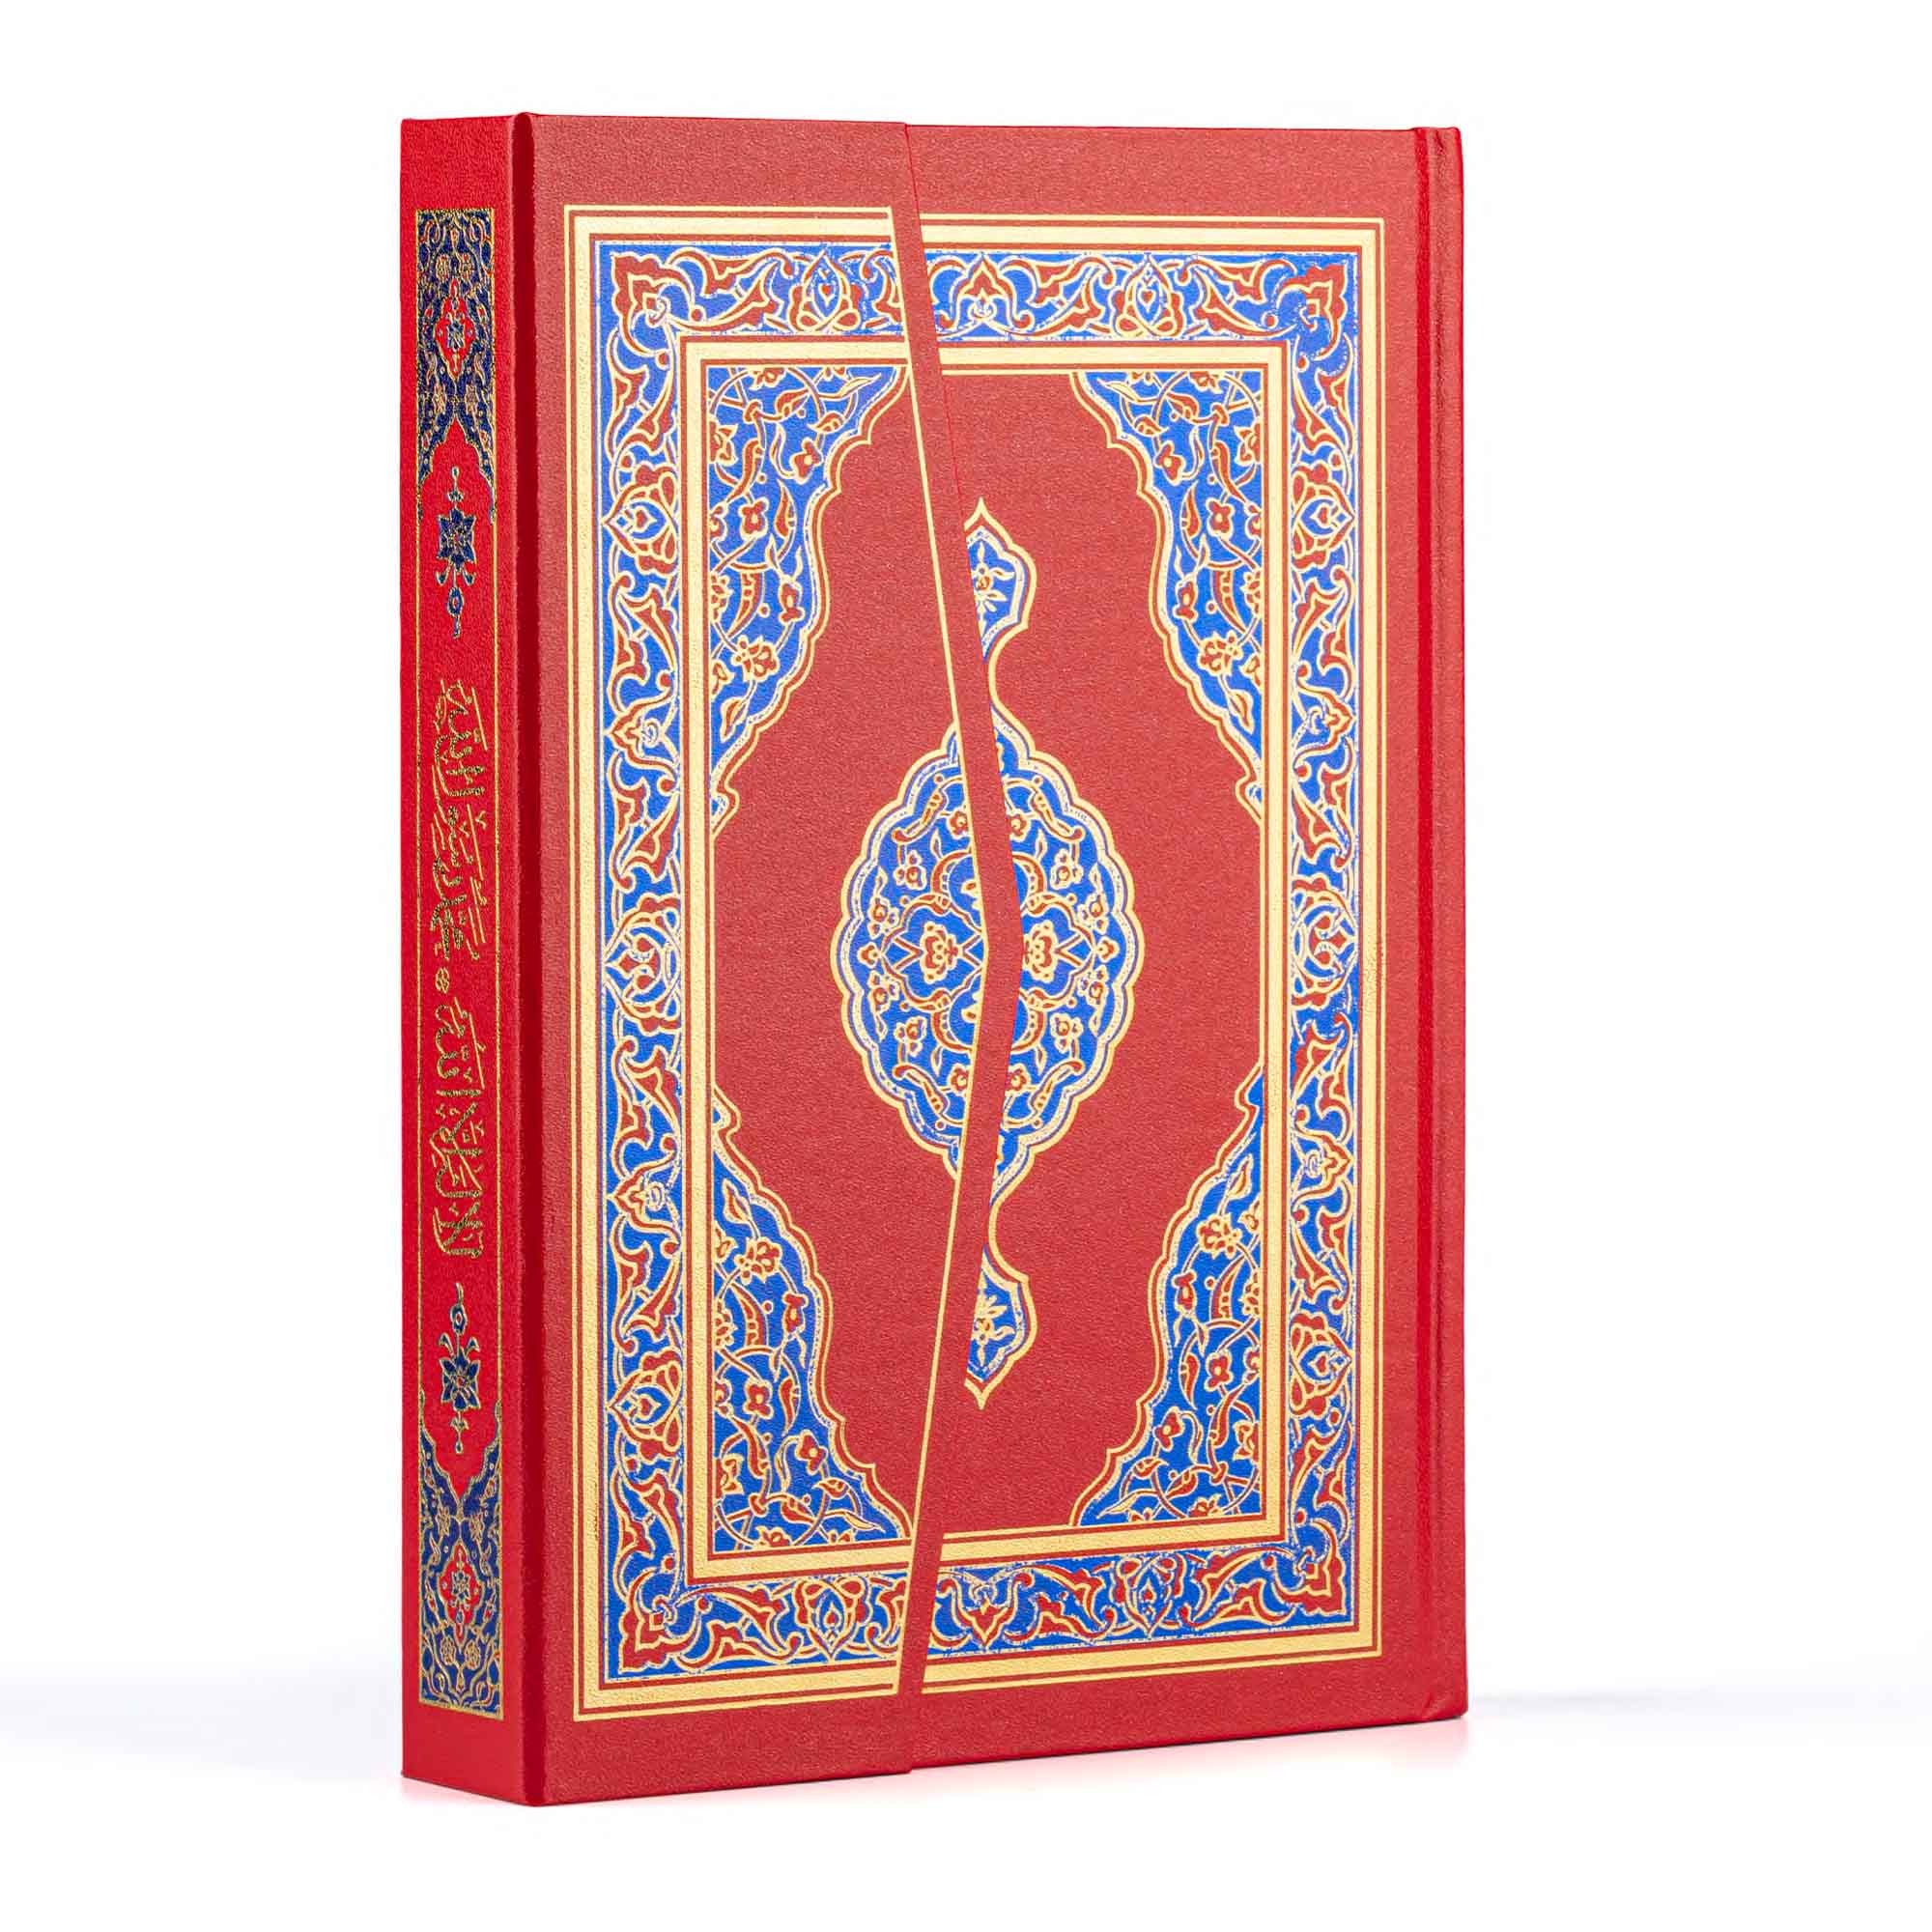 Orta Boy Kur'an-ı Kerim (Kırmızı Renk) Hamid Aytaç Hattı